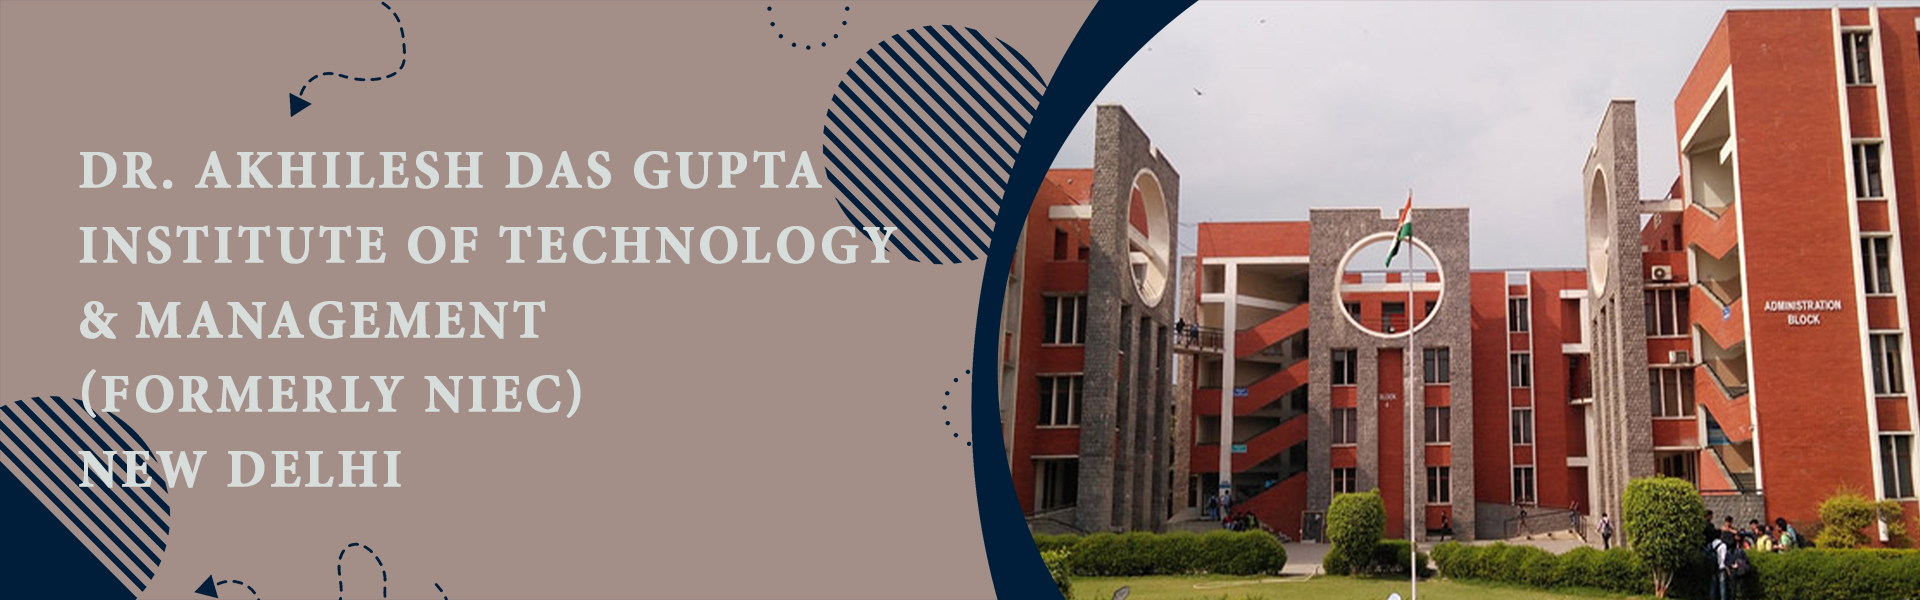 Dr. Akhilesh Das Gupta Institute Of Technology & Management (Formerly NIEC), New Delhi